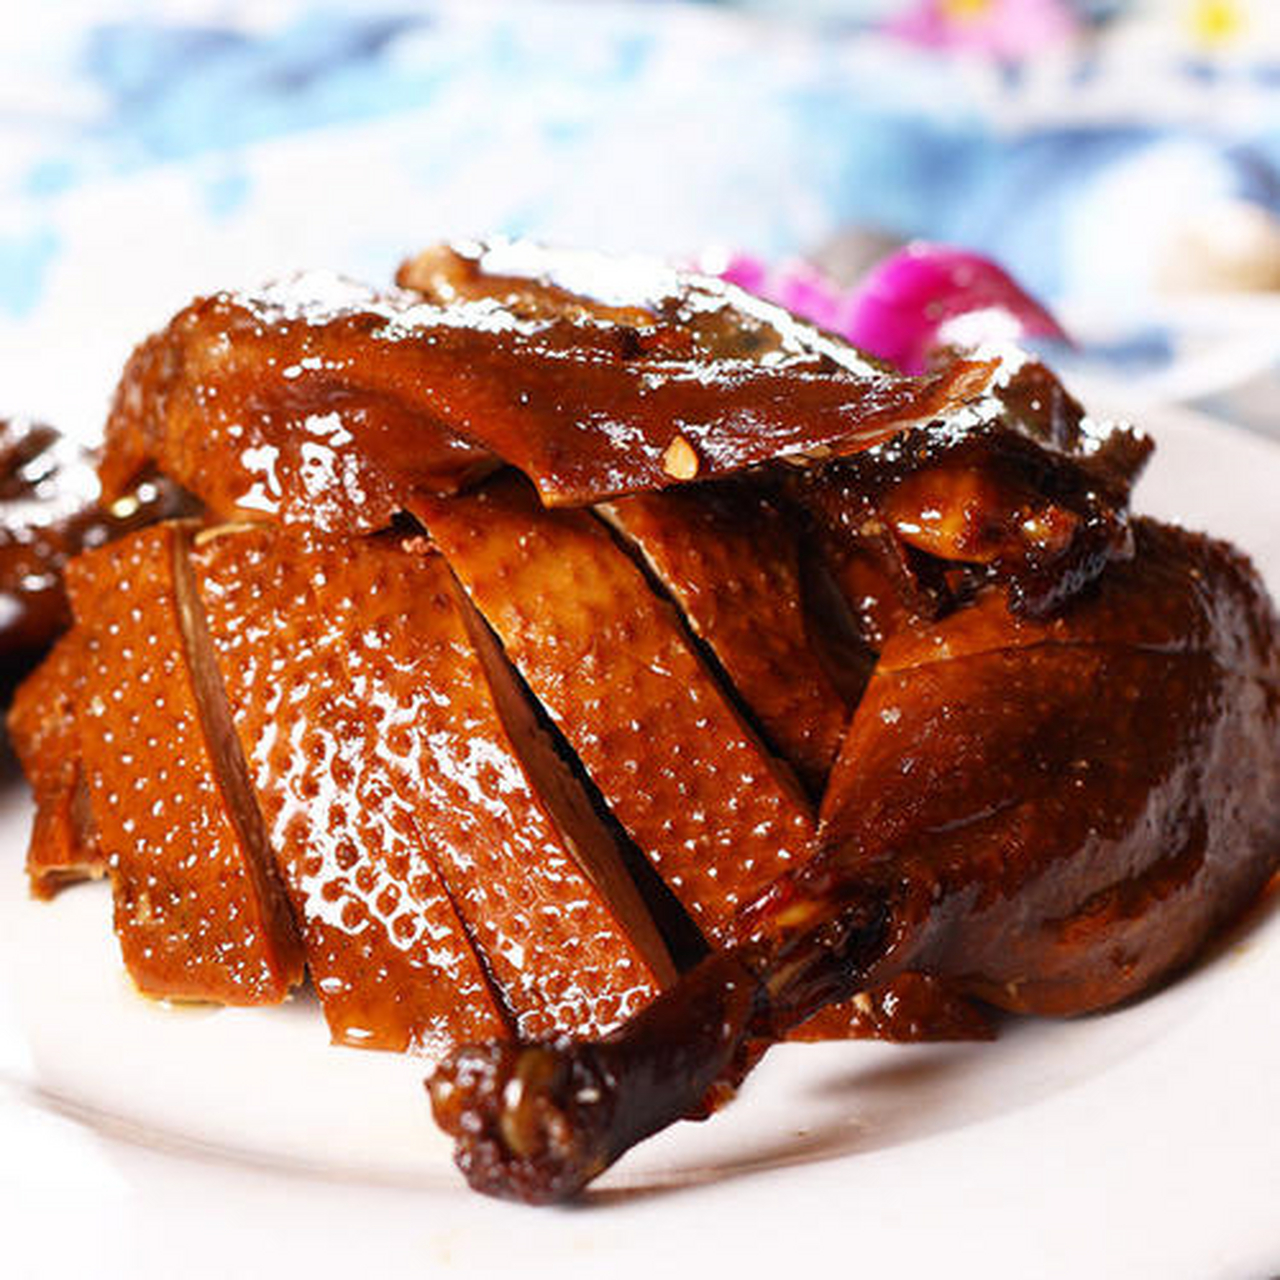 乐山甜皮鸭,是四川省乐山市的著名特产,具有色泽红亮,入口咸甜,皮酥略